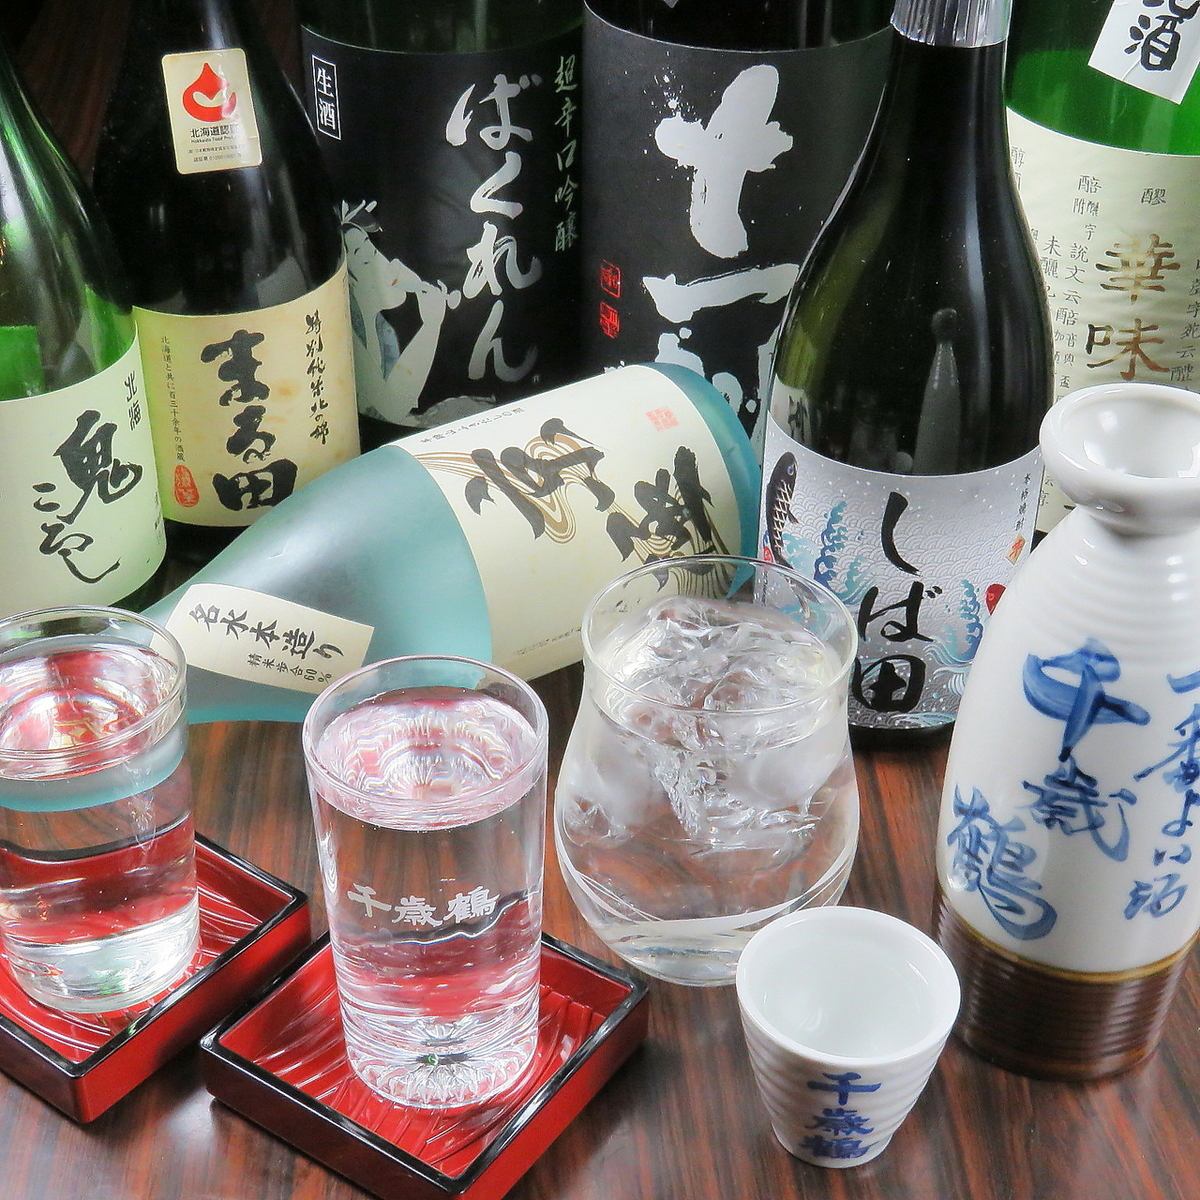 品嚐各種當地酒和日本酒，以及從小樽漁港直送的新鮮海鮮。